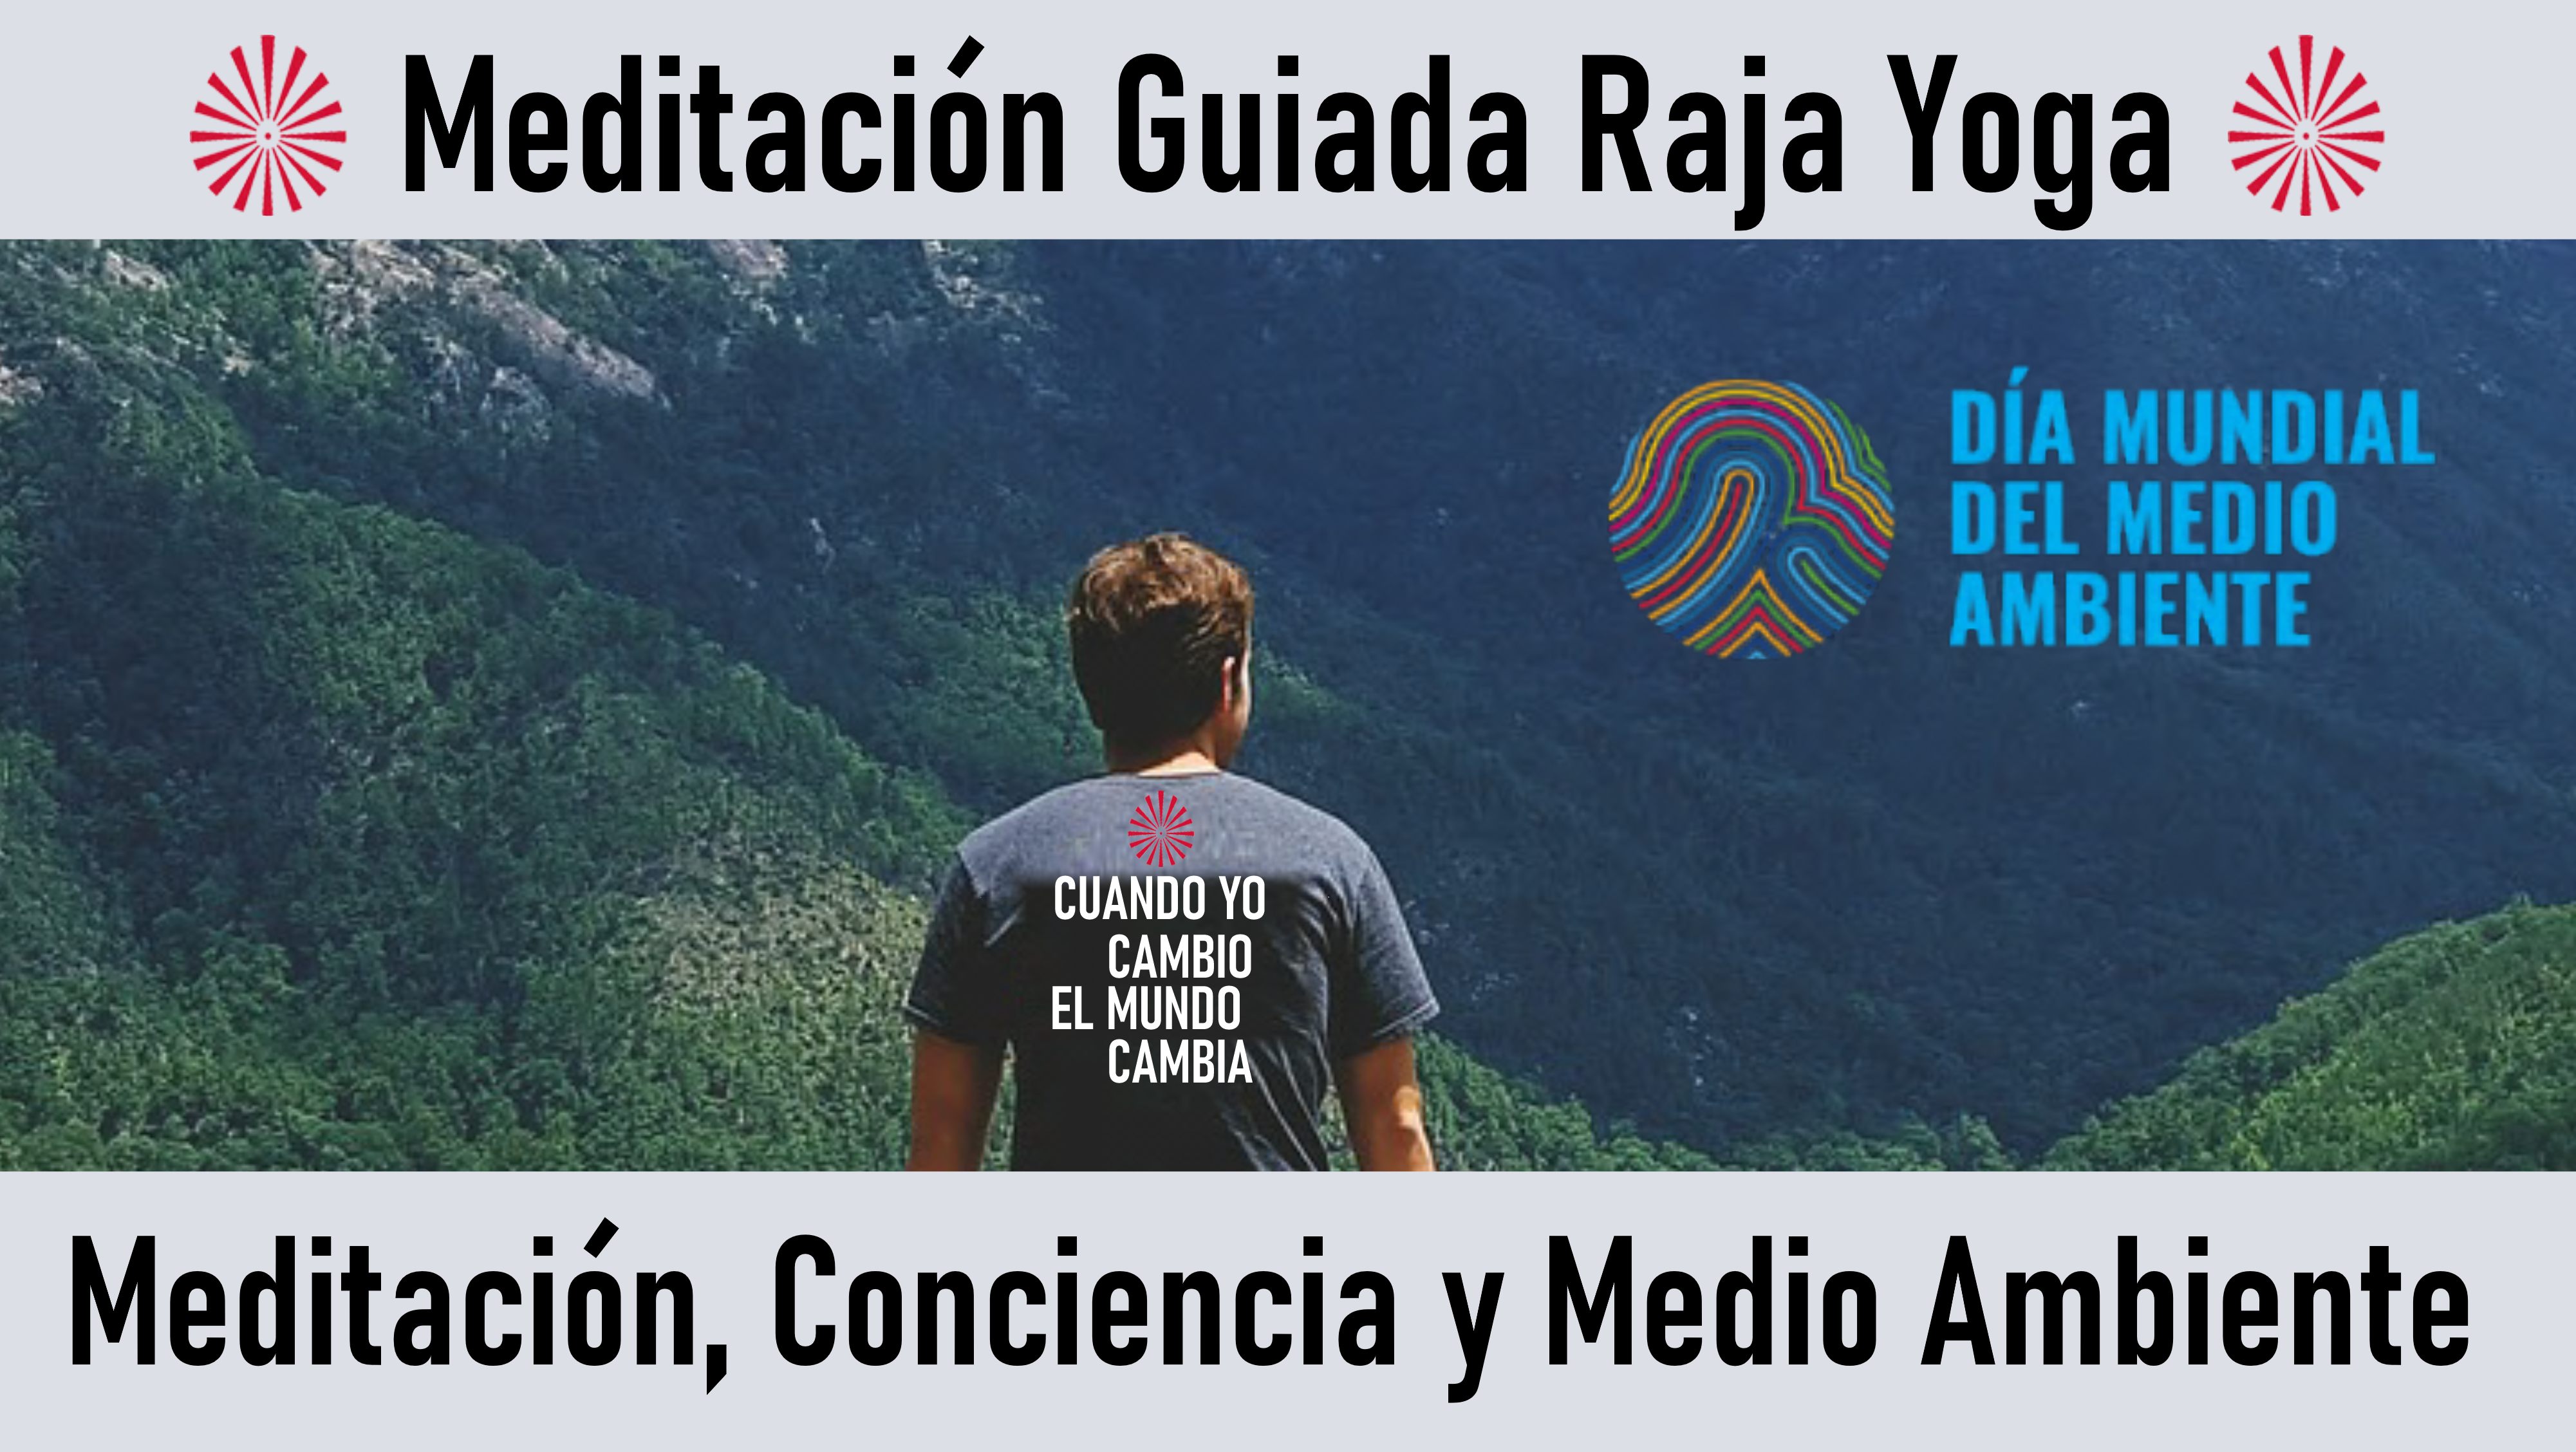 Meditación Raja Yoga: Meditación, Conciencia y Medio Ambiente (5 Junio 2020) On-line desde Madrid